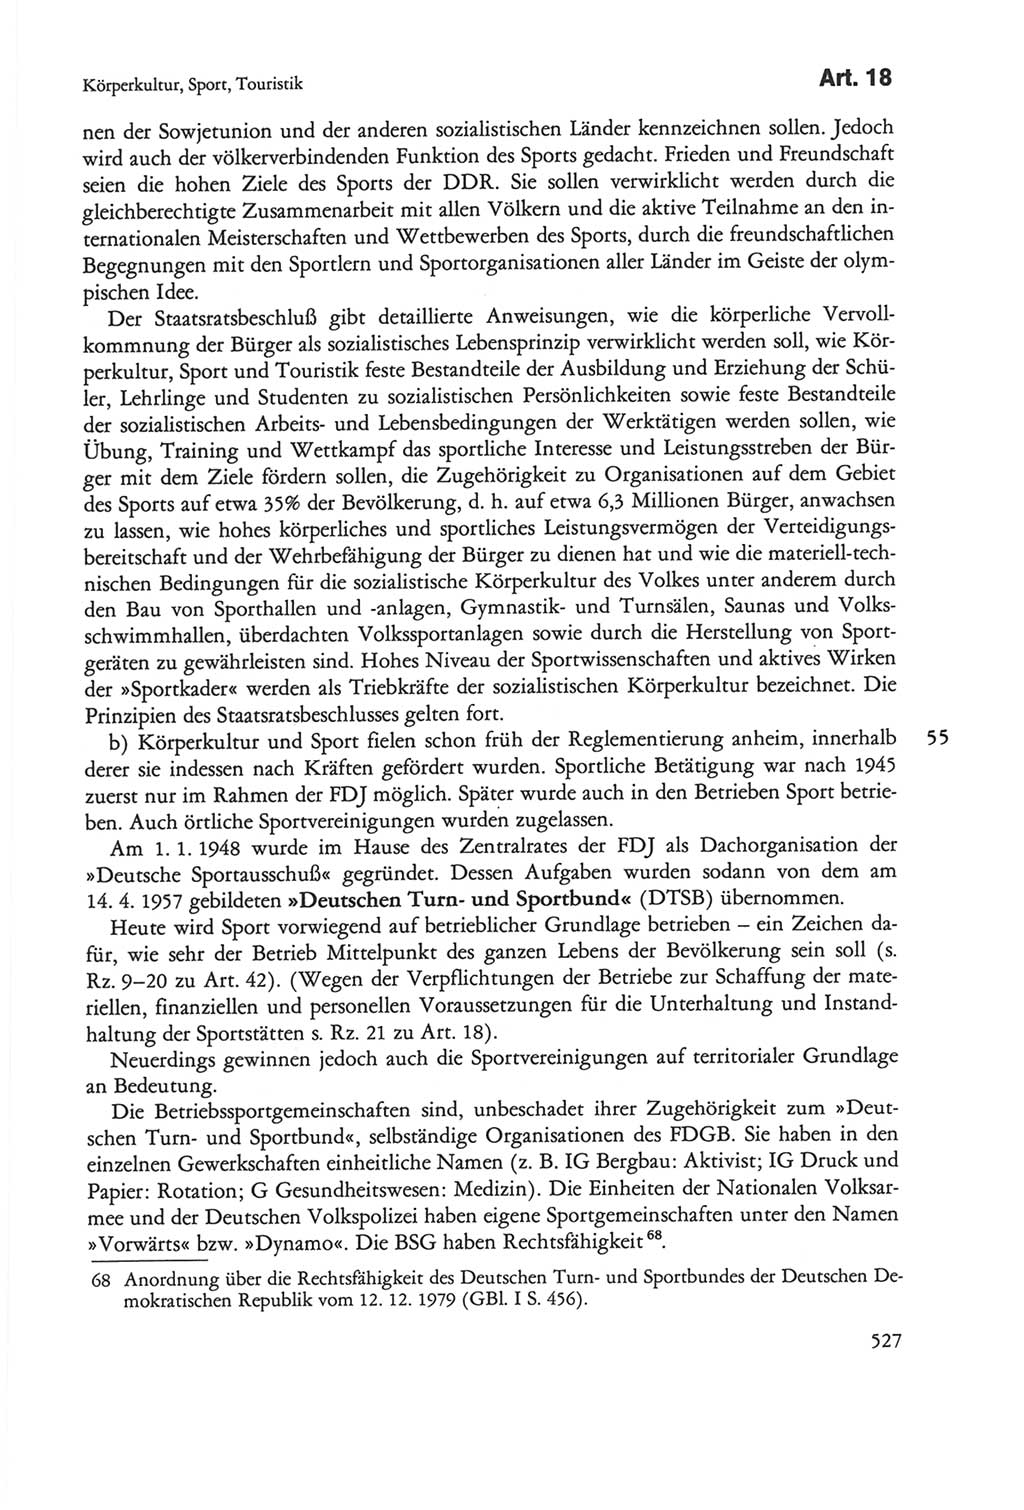 Die sozialistische Verfassung der Deutschen Demokratischen Republik (DDR), Kommentar 1982, Seite 527 (Soz. Verf. DDR Komm. 1982, S. 527)